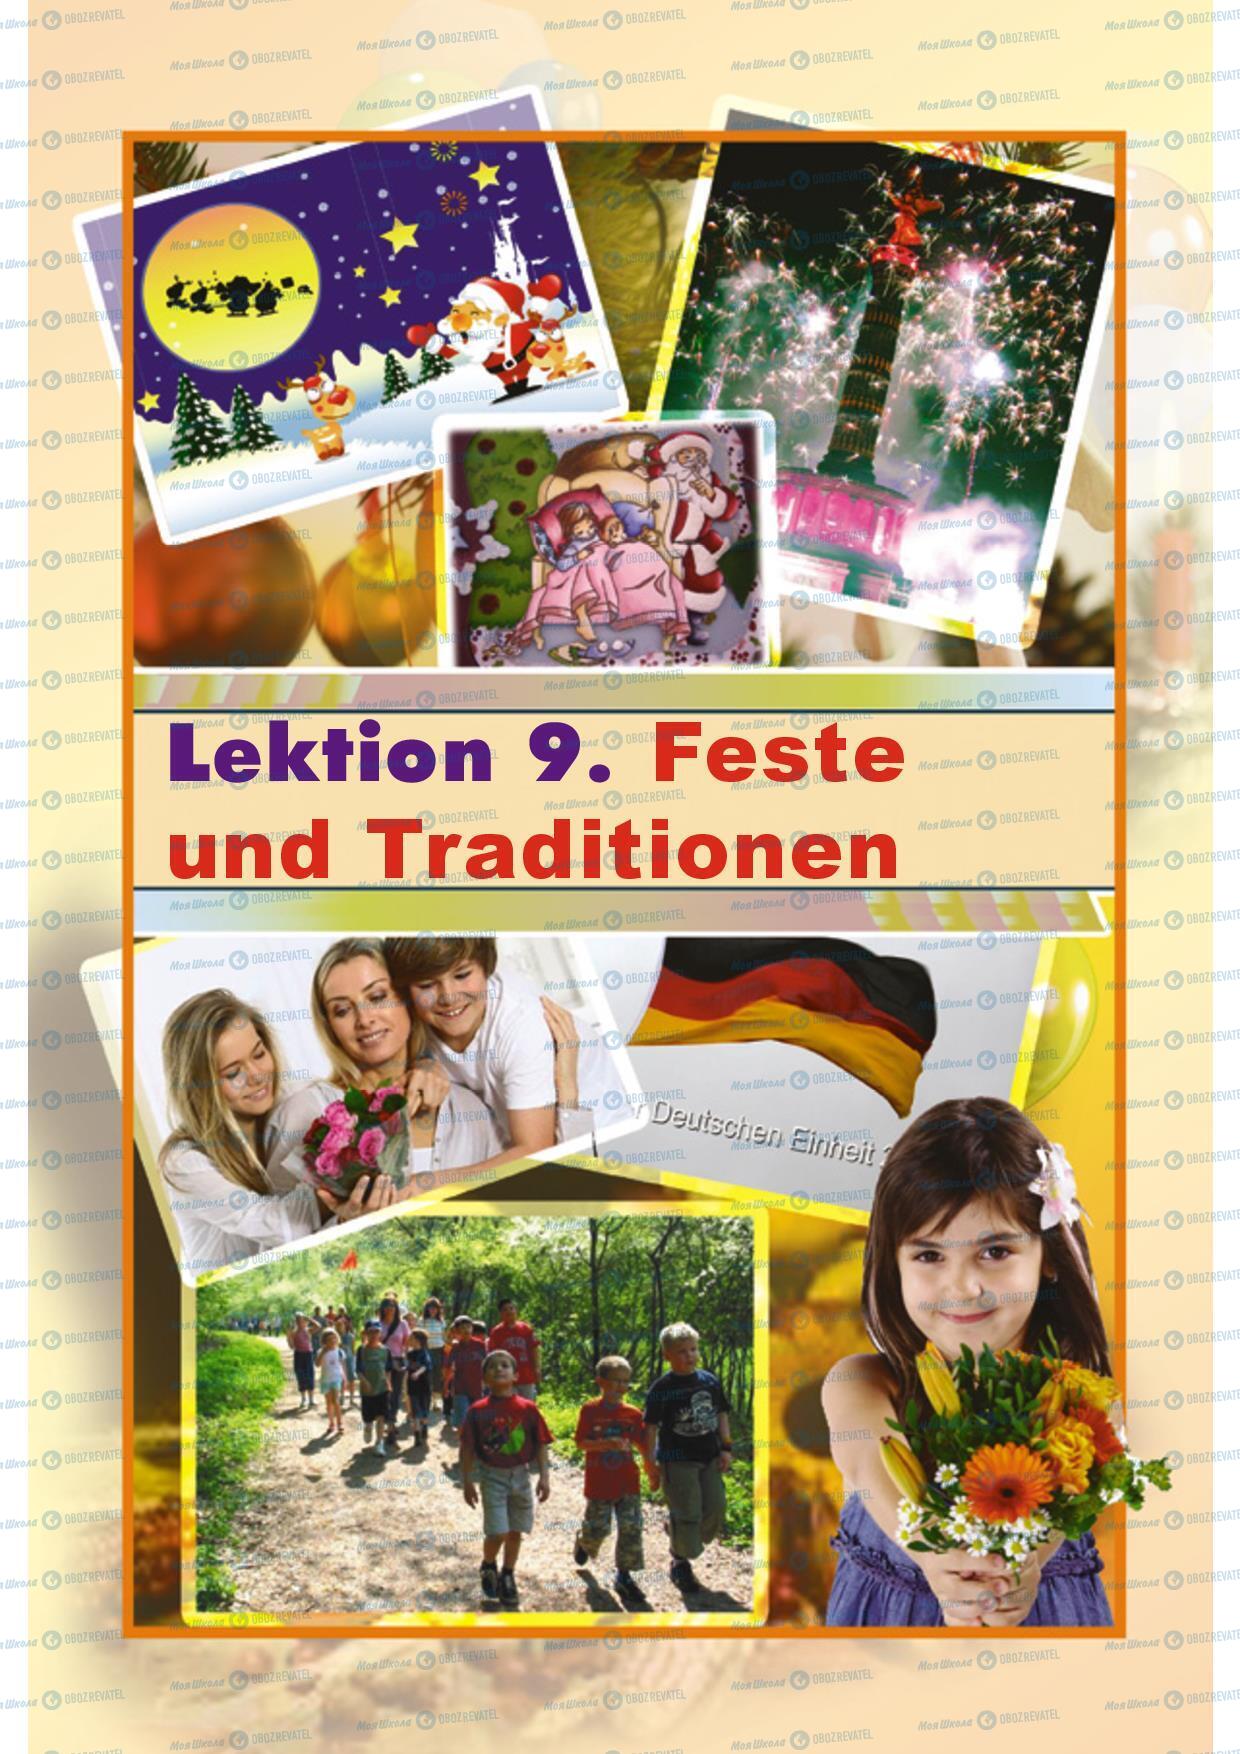 Підручники Німецька мова 5 клас сторінка 220